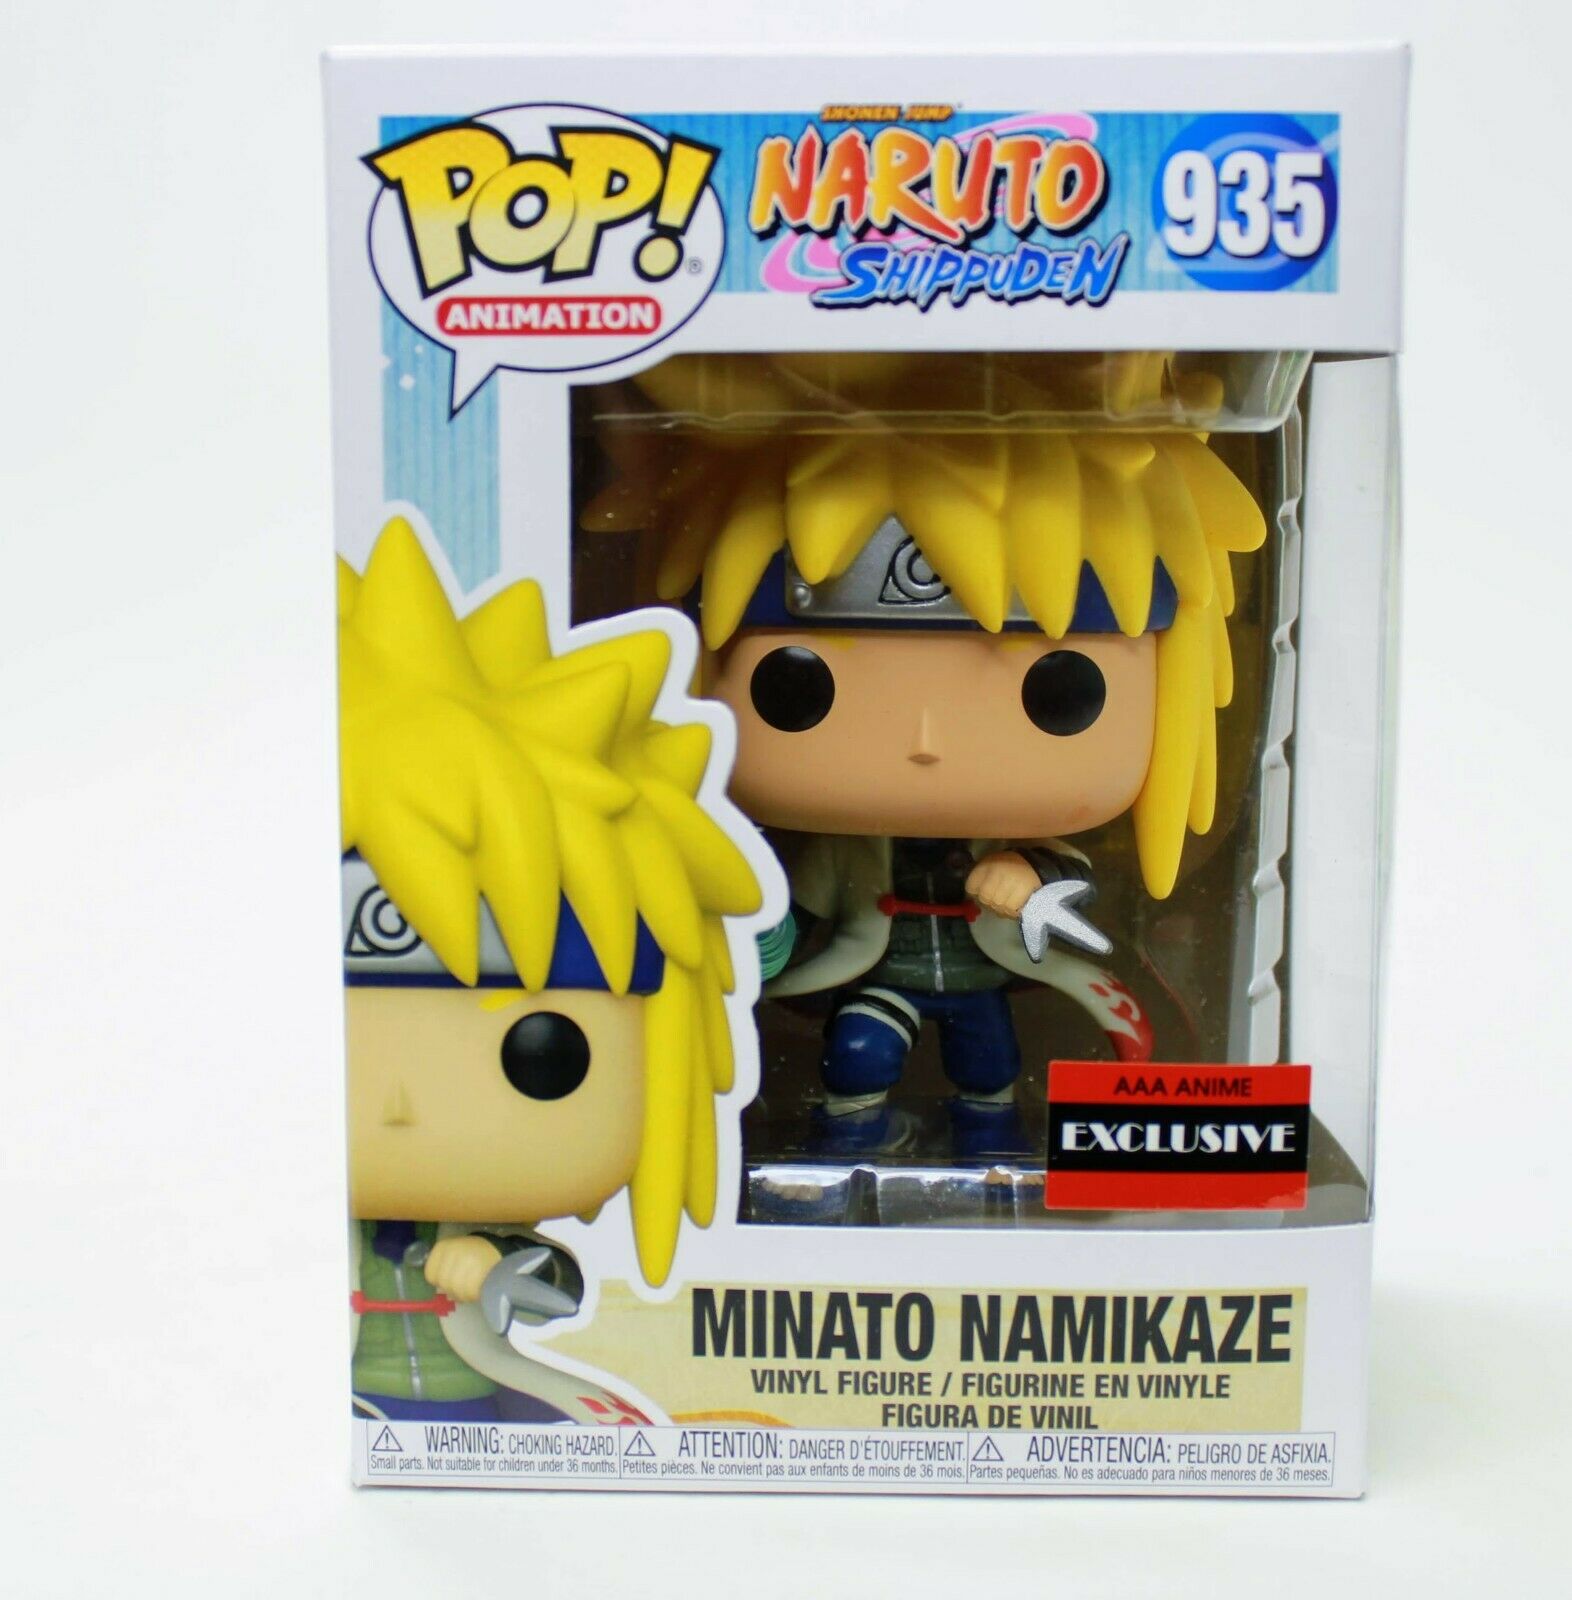 Funko Pop! Anime Naruto Shippuden Minato Namikaze AAA Exclusive Vinyl Figure 935